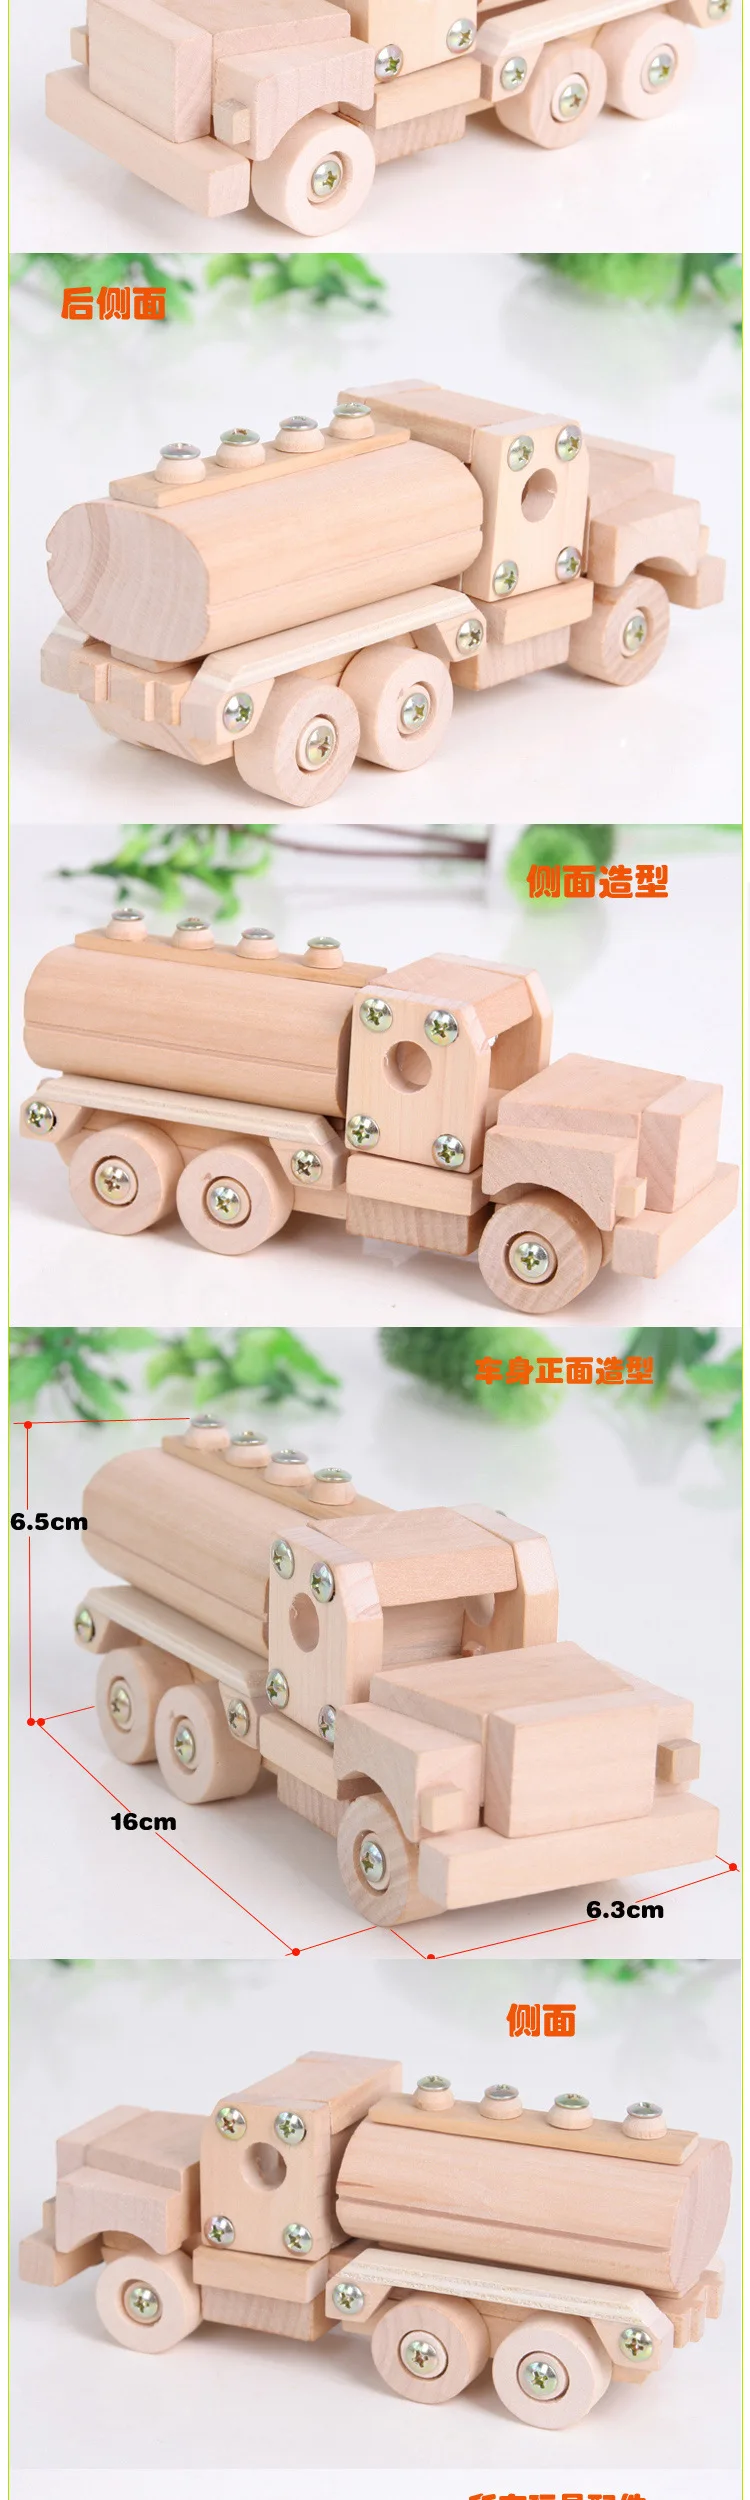 Деревянная разборка Сборная модель танкер цементный миксер грузовик детская головоломка креативный diy шуруп игрушка грузовик обучающая игрушка